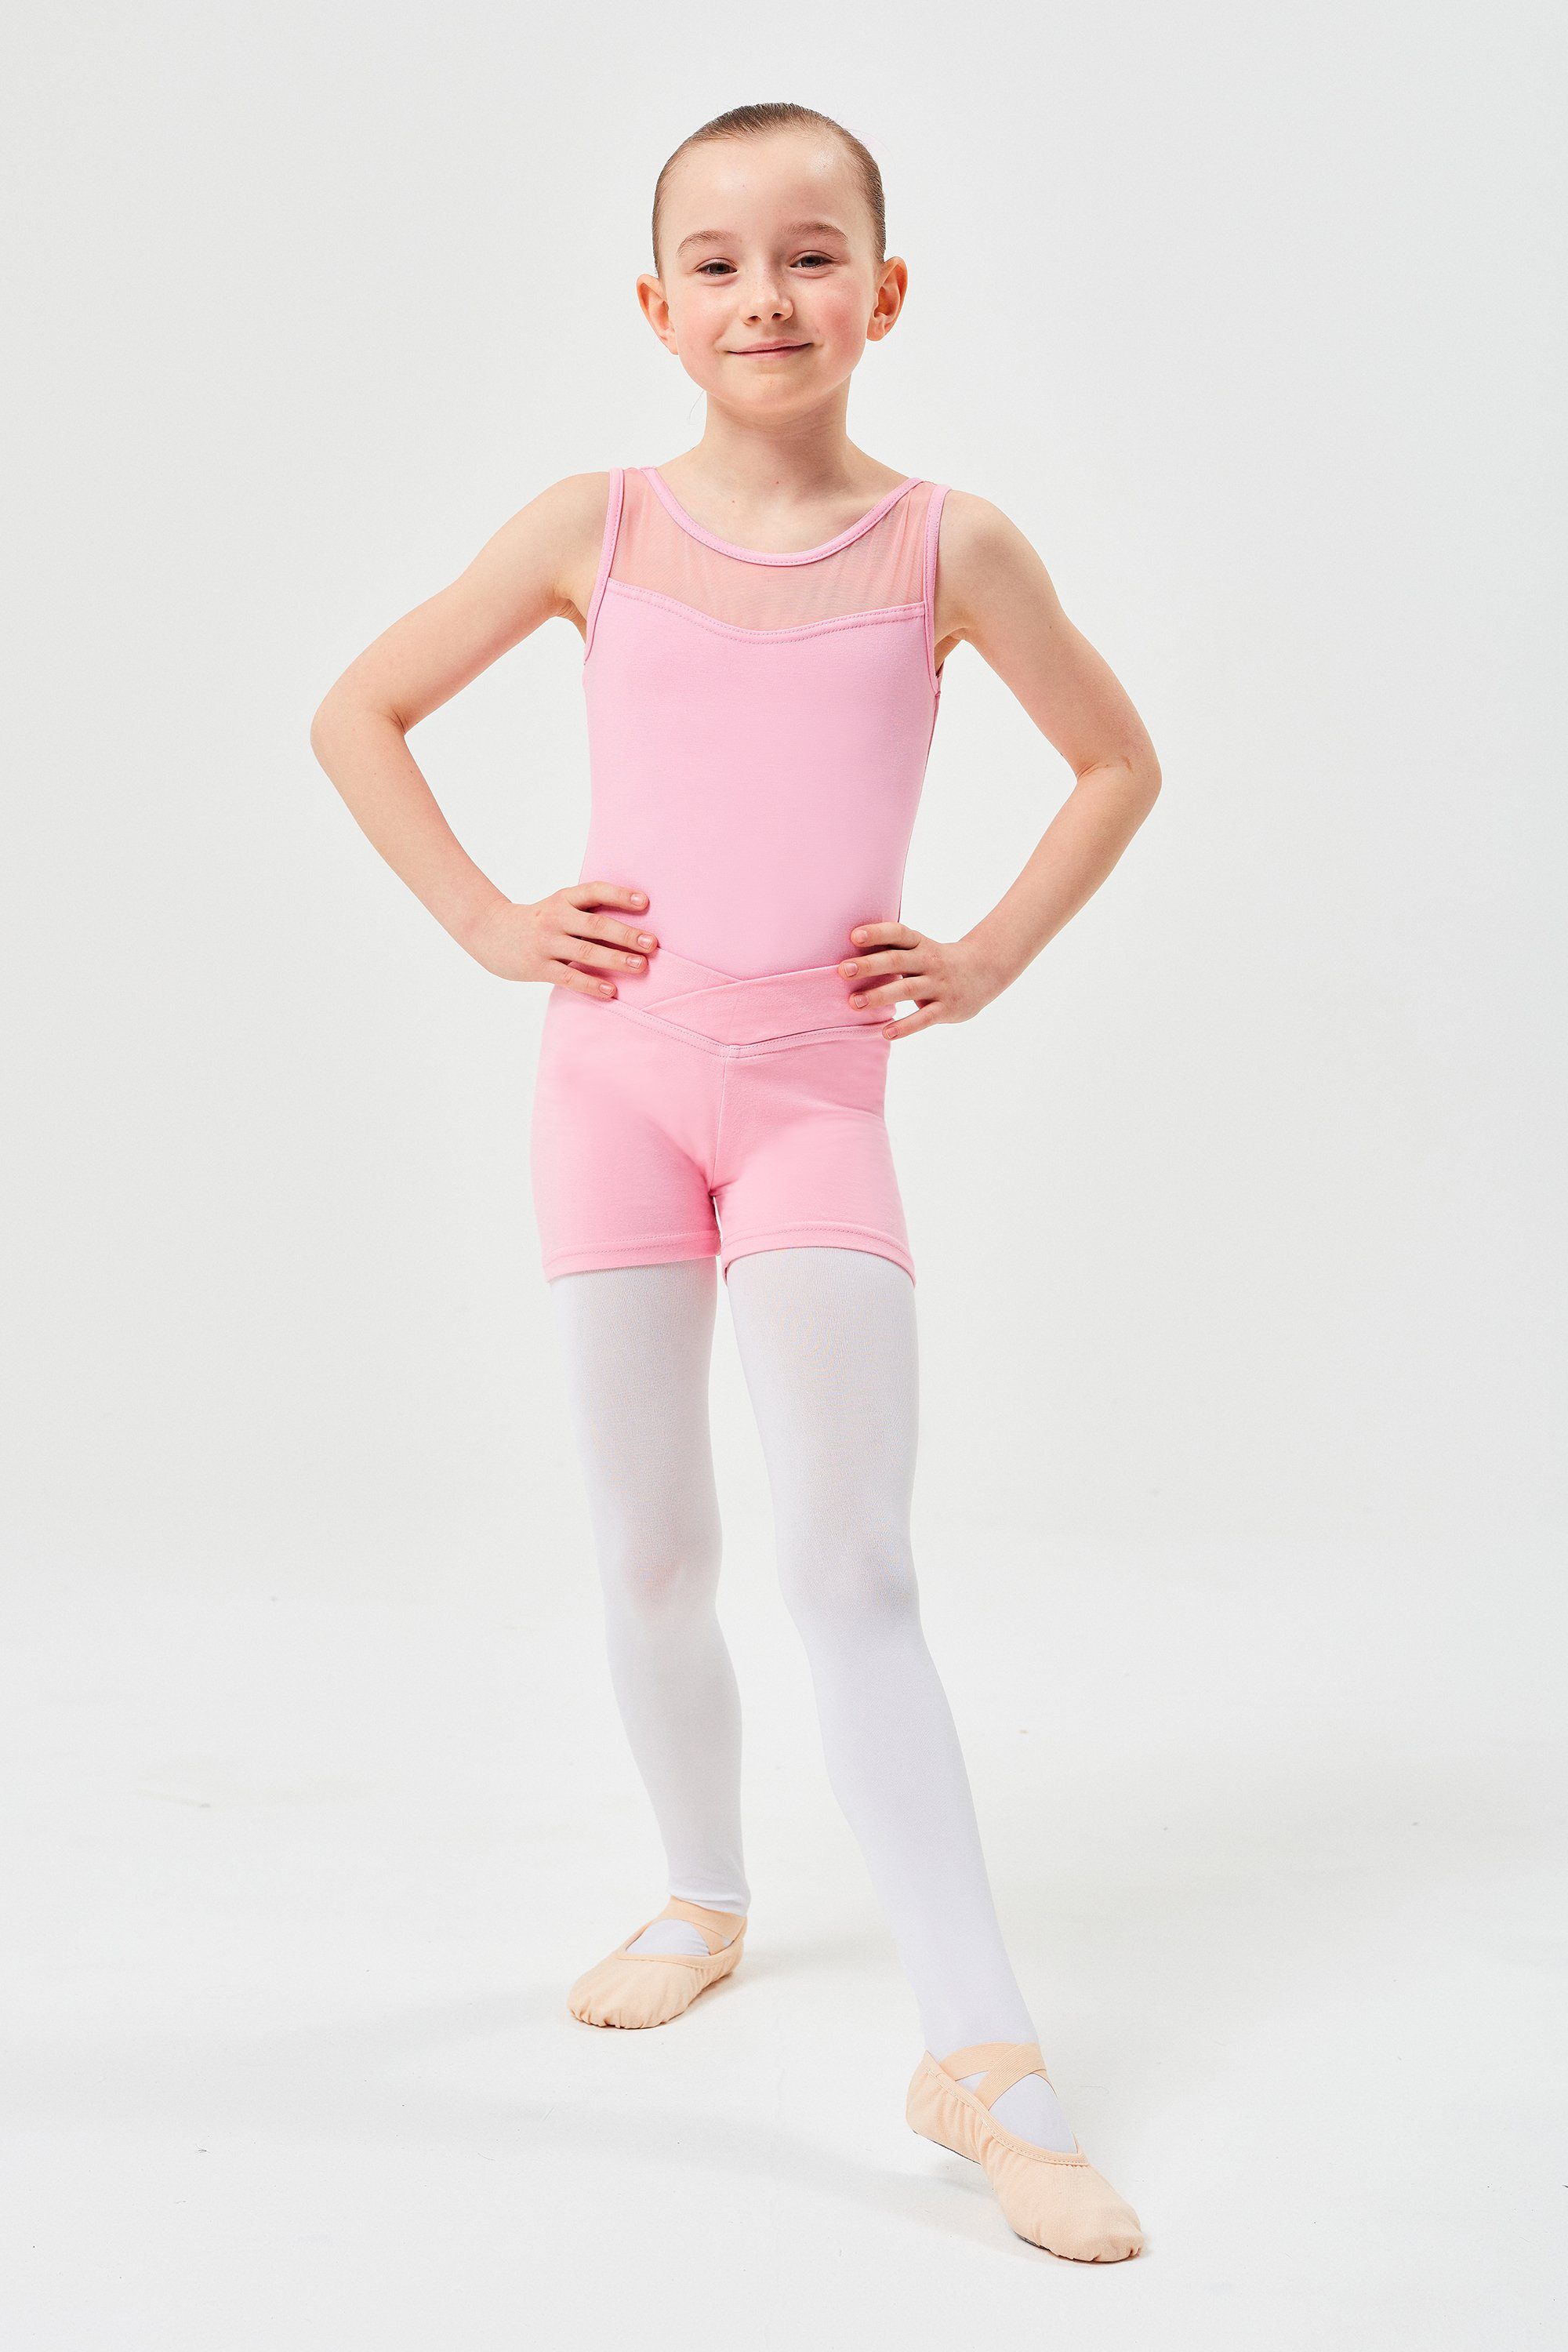 kurze Shorts weicher Baumwolle für Abby aus Mädchen Dancehose Hose rosa Ballett tanzmuster